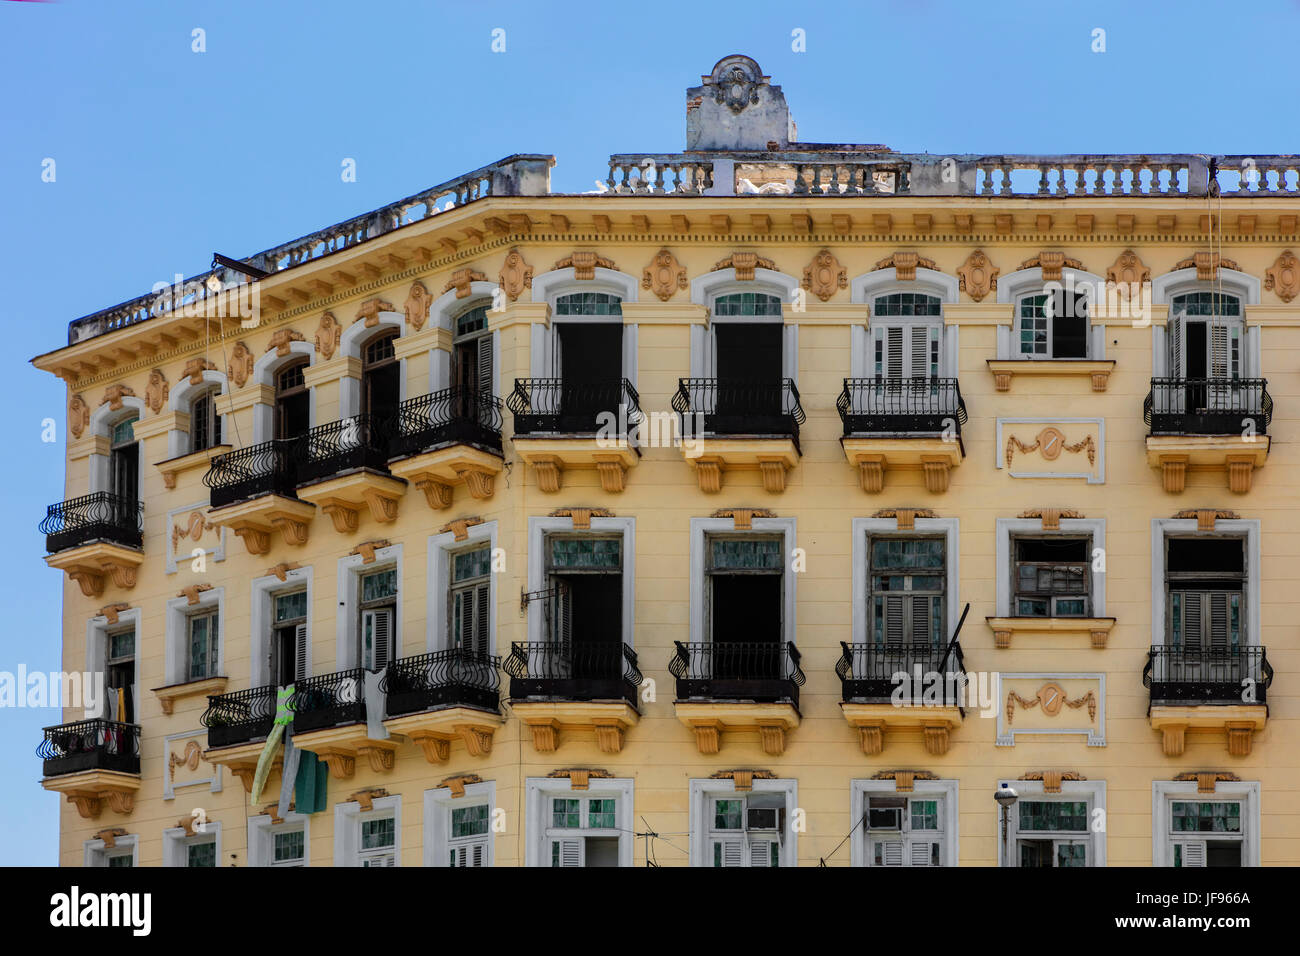 Historischer Architektur ziert ein Großteil HABANA VIEJA - Havanna, Kuba Stockfoto